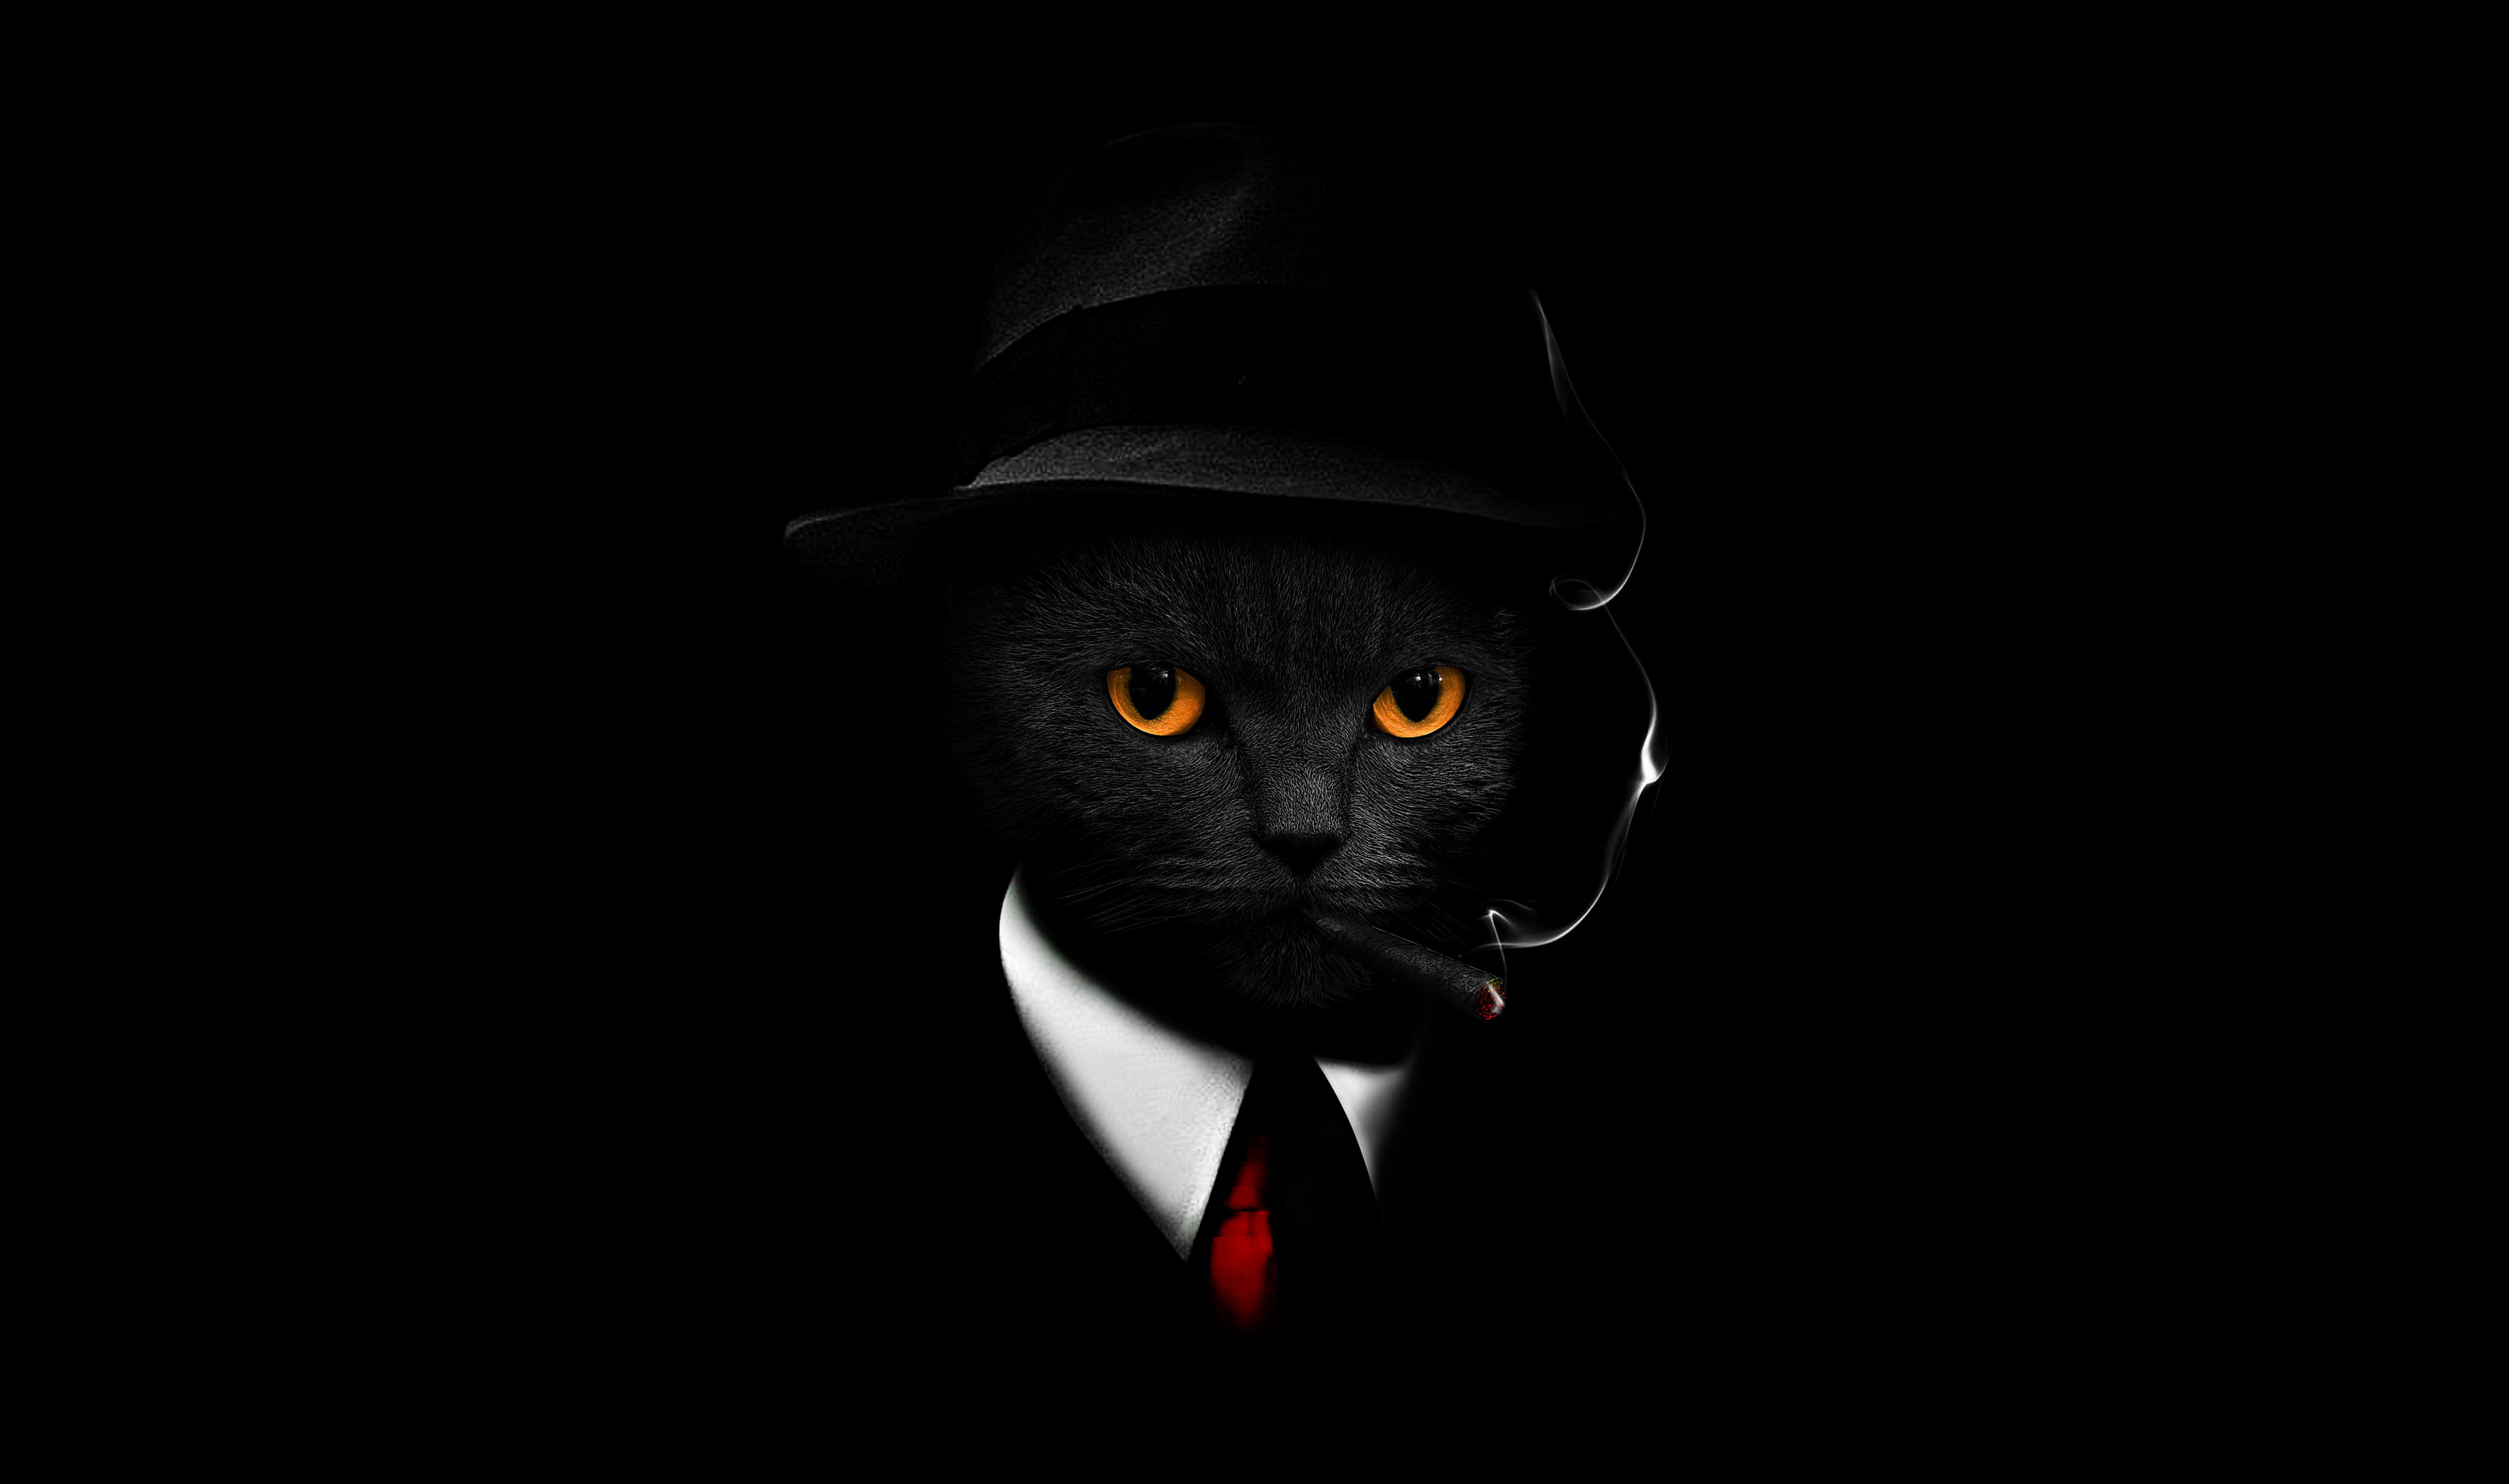 Một chú mèo đen đang đeo mũ, trên nền đen tối trong hình nền 4K #6597 sẽ làm cho bạn cảm thấy những xúc cảm của sự tò mò và giải trí. Xem ngay để thưởng thức vẻ đẹp đầy thú vị của động vật này!